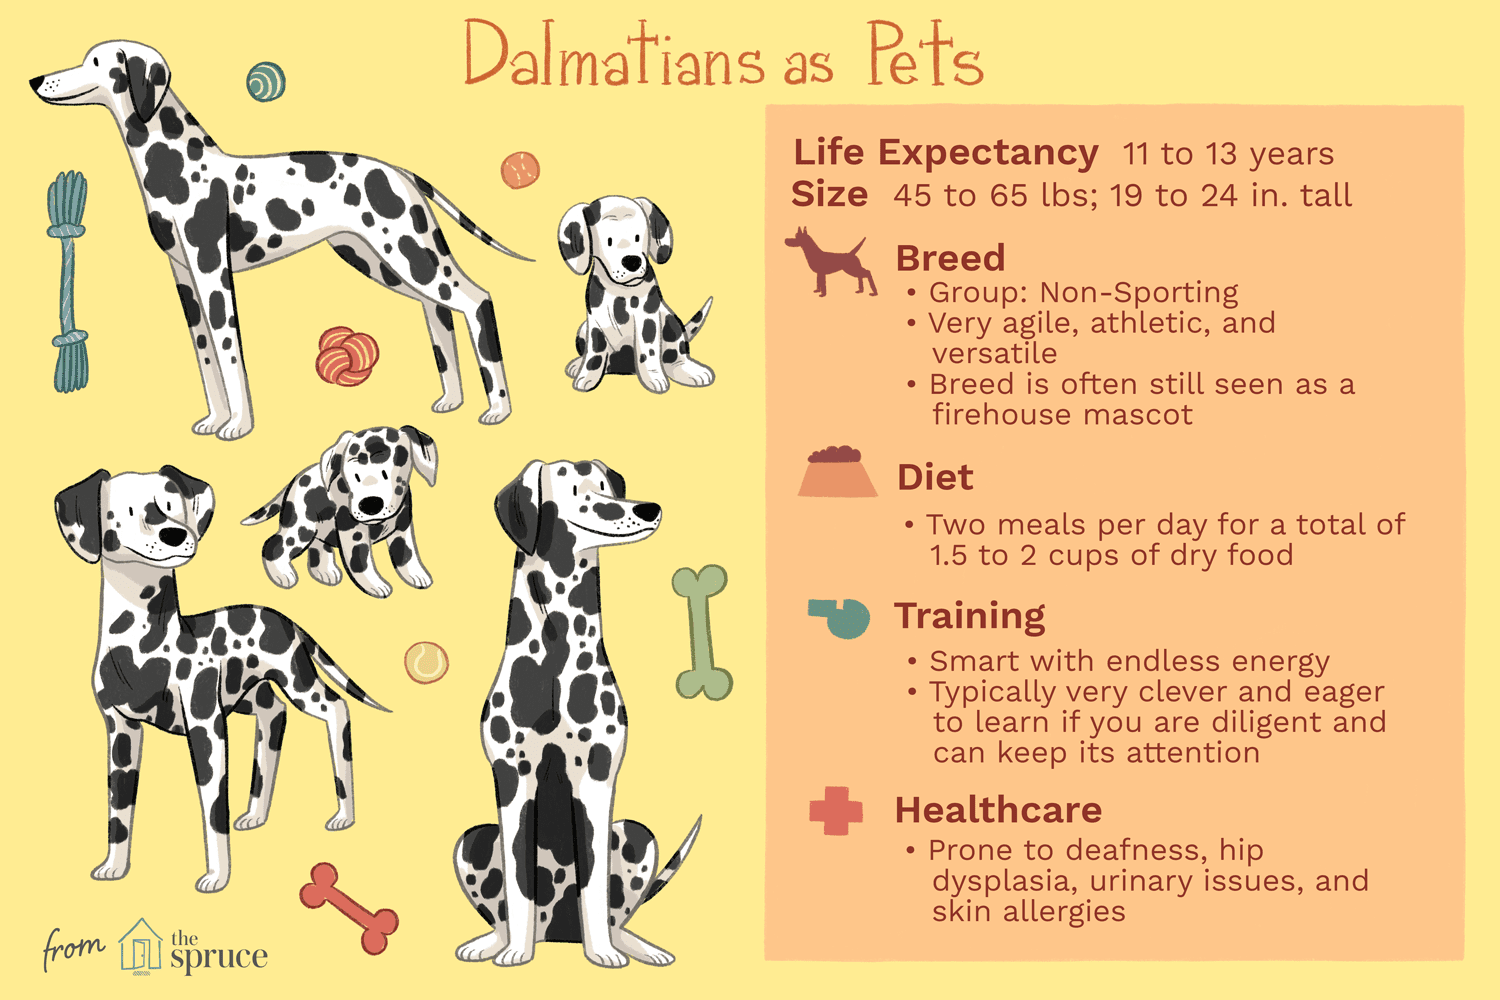 Далматинец:характеристики породы собак и уход